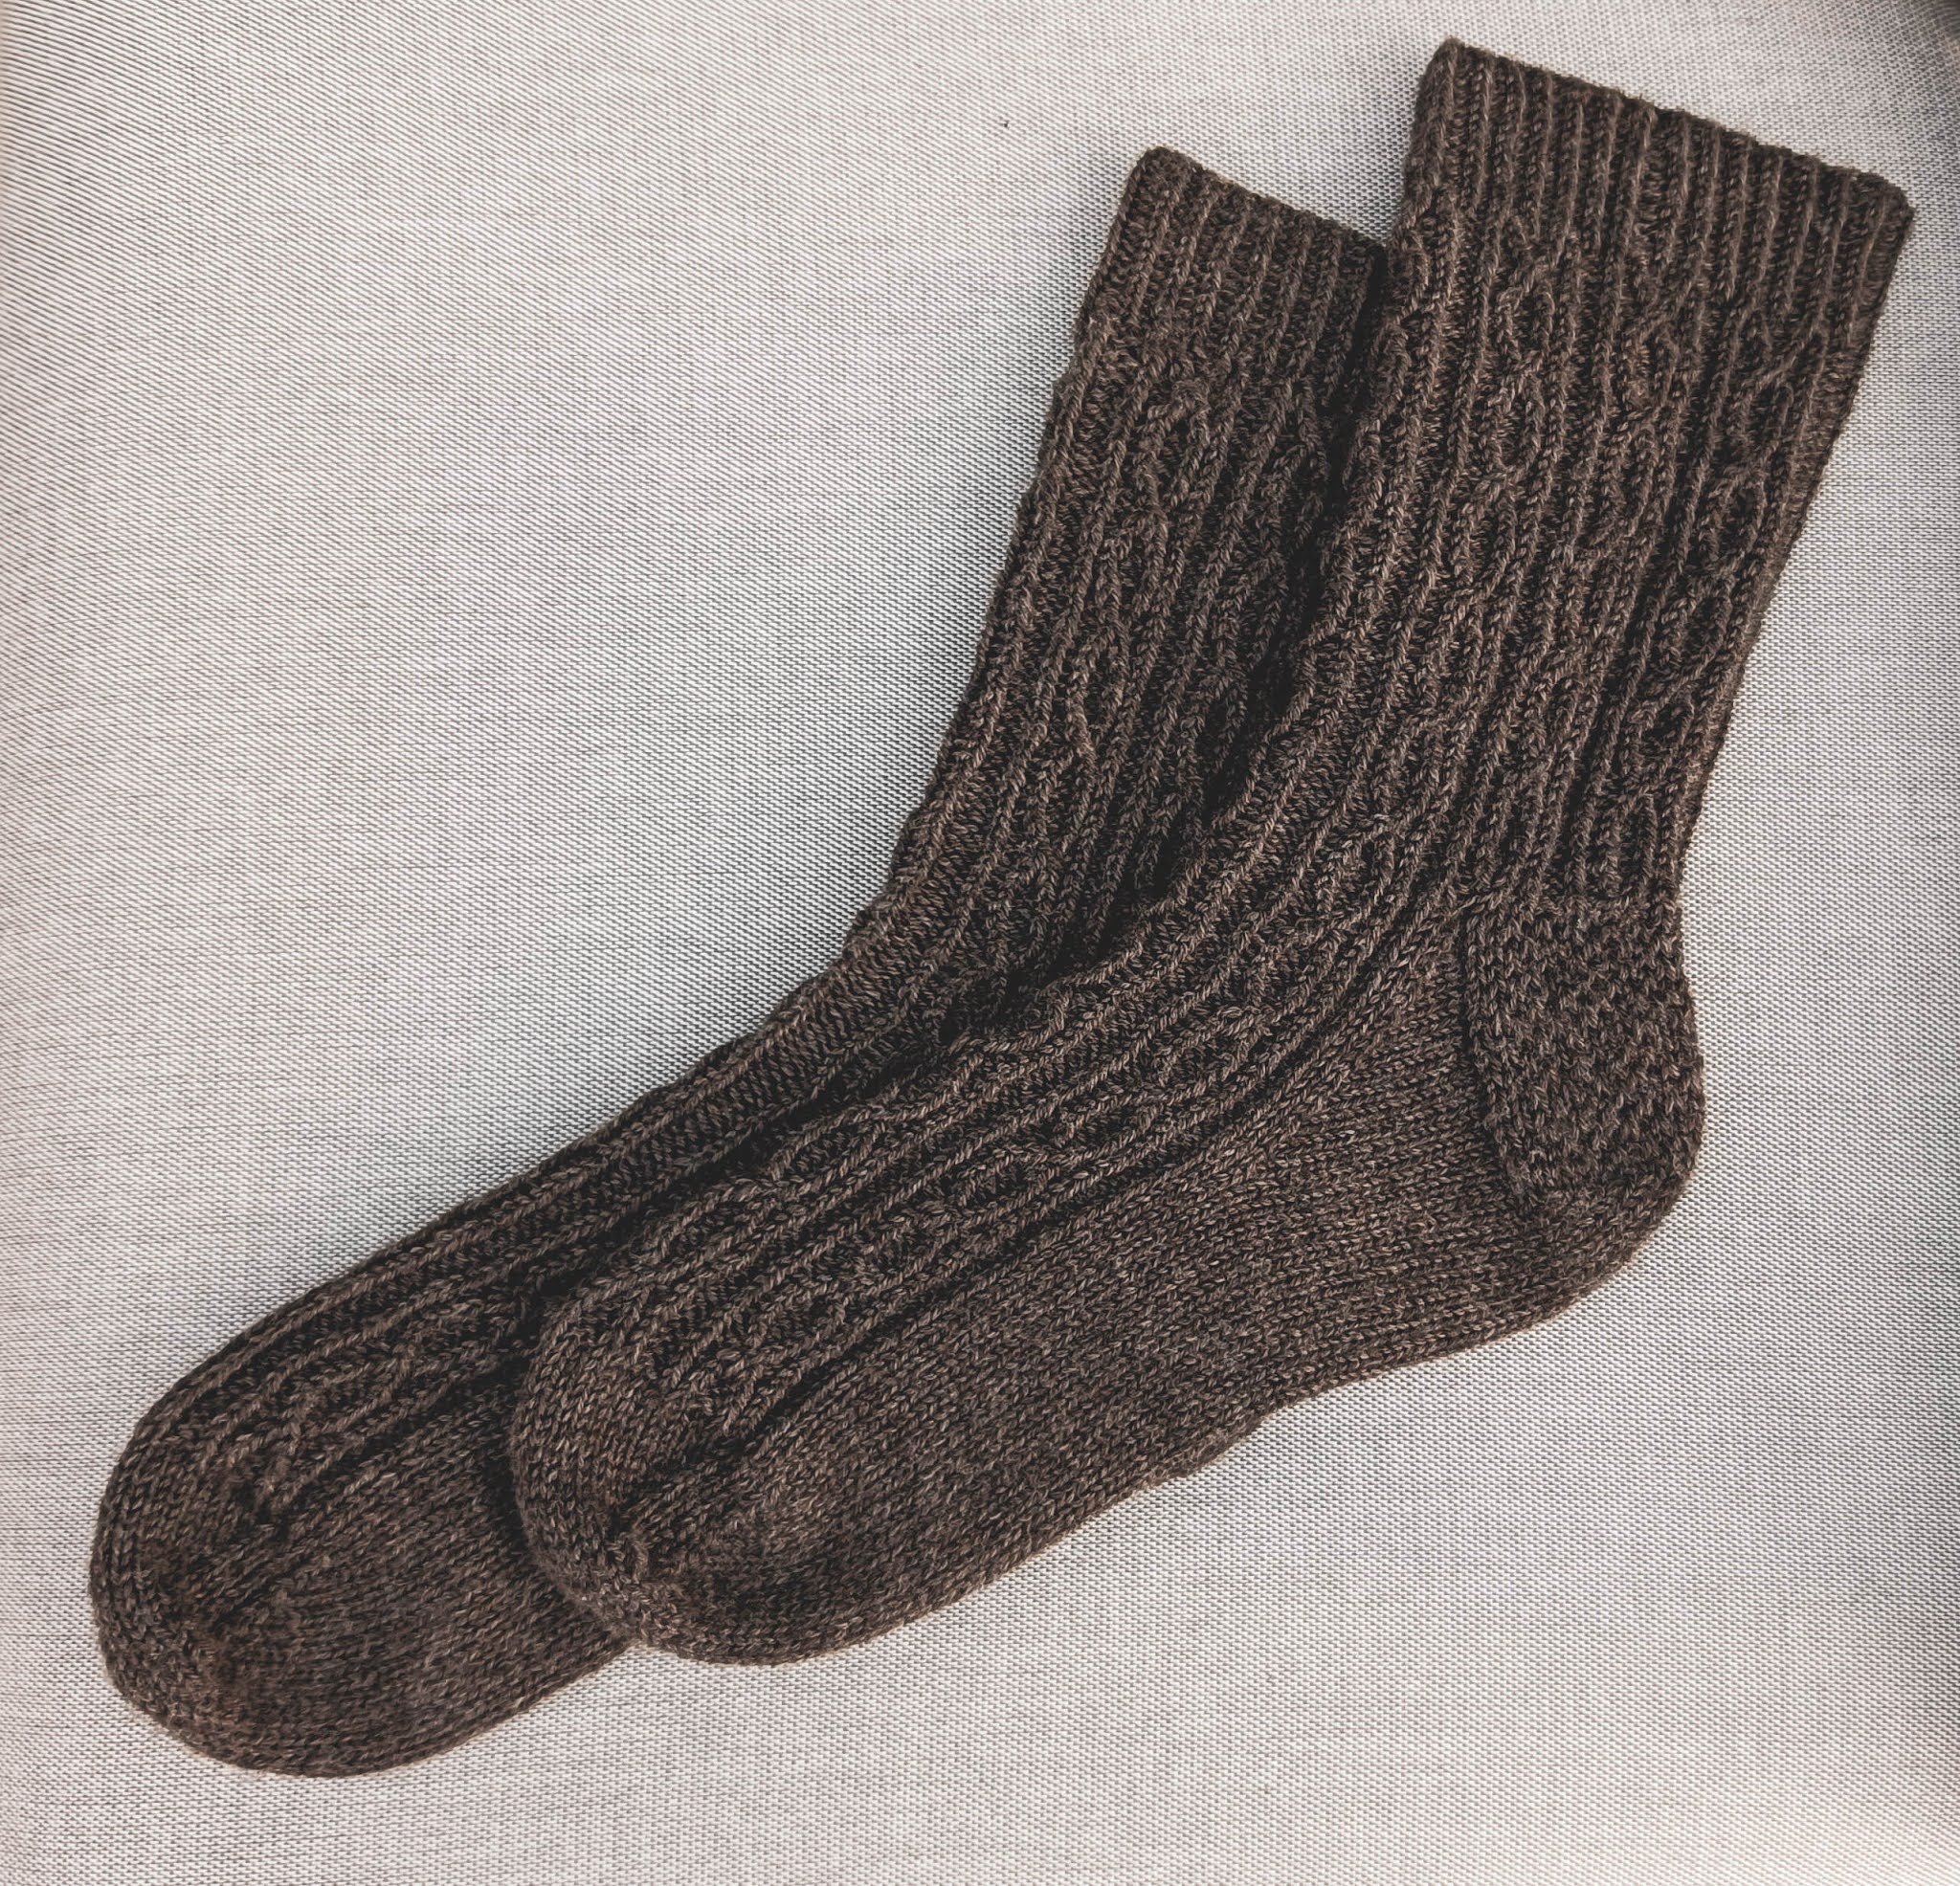 Fleetwood Socks knitting pattern by West Beach Knits